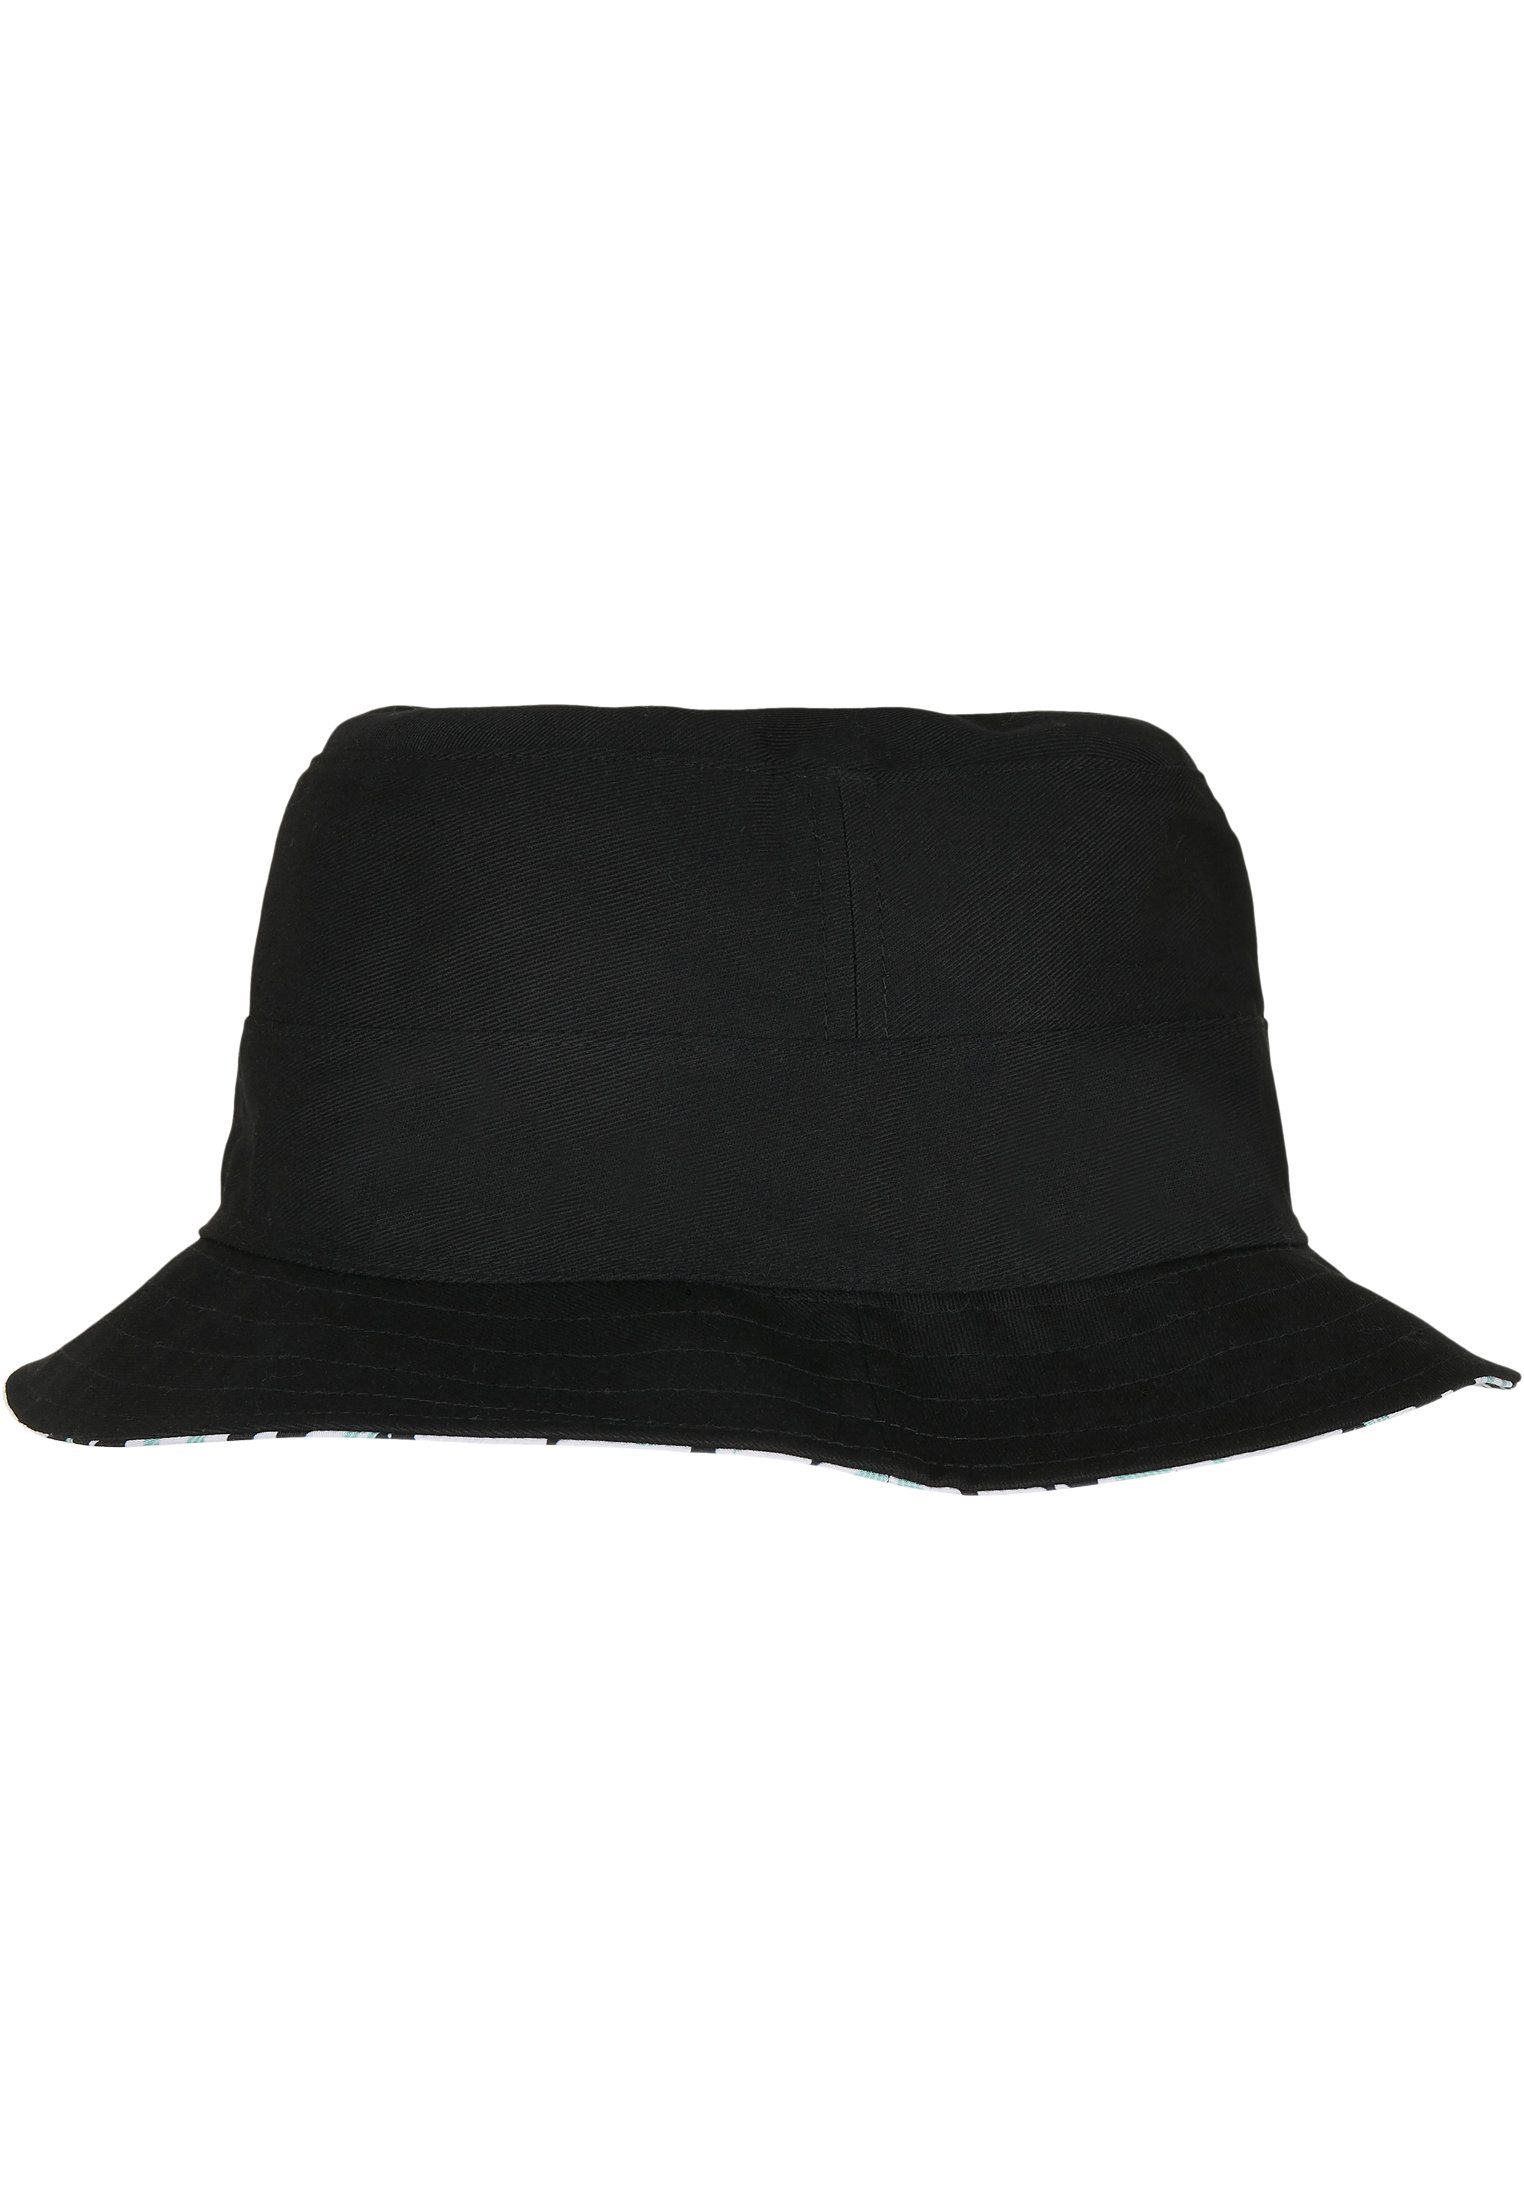 CAYLER & SONS Flex Cap WL Aztec Hat Reversible Summer Bucket C&S